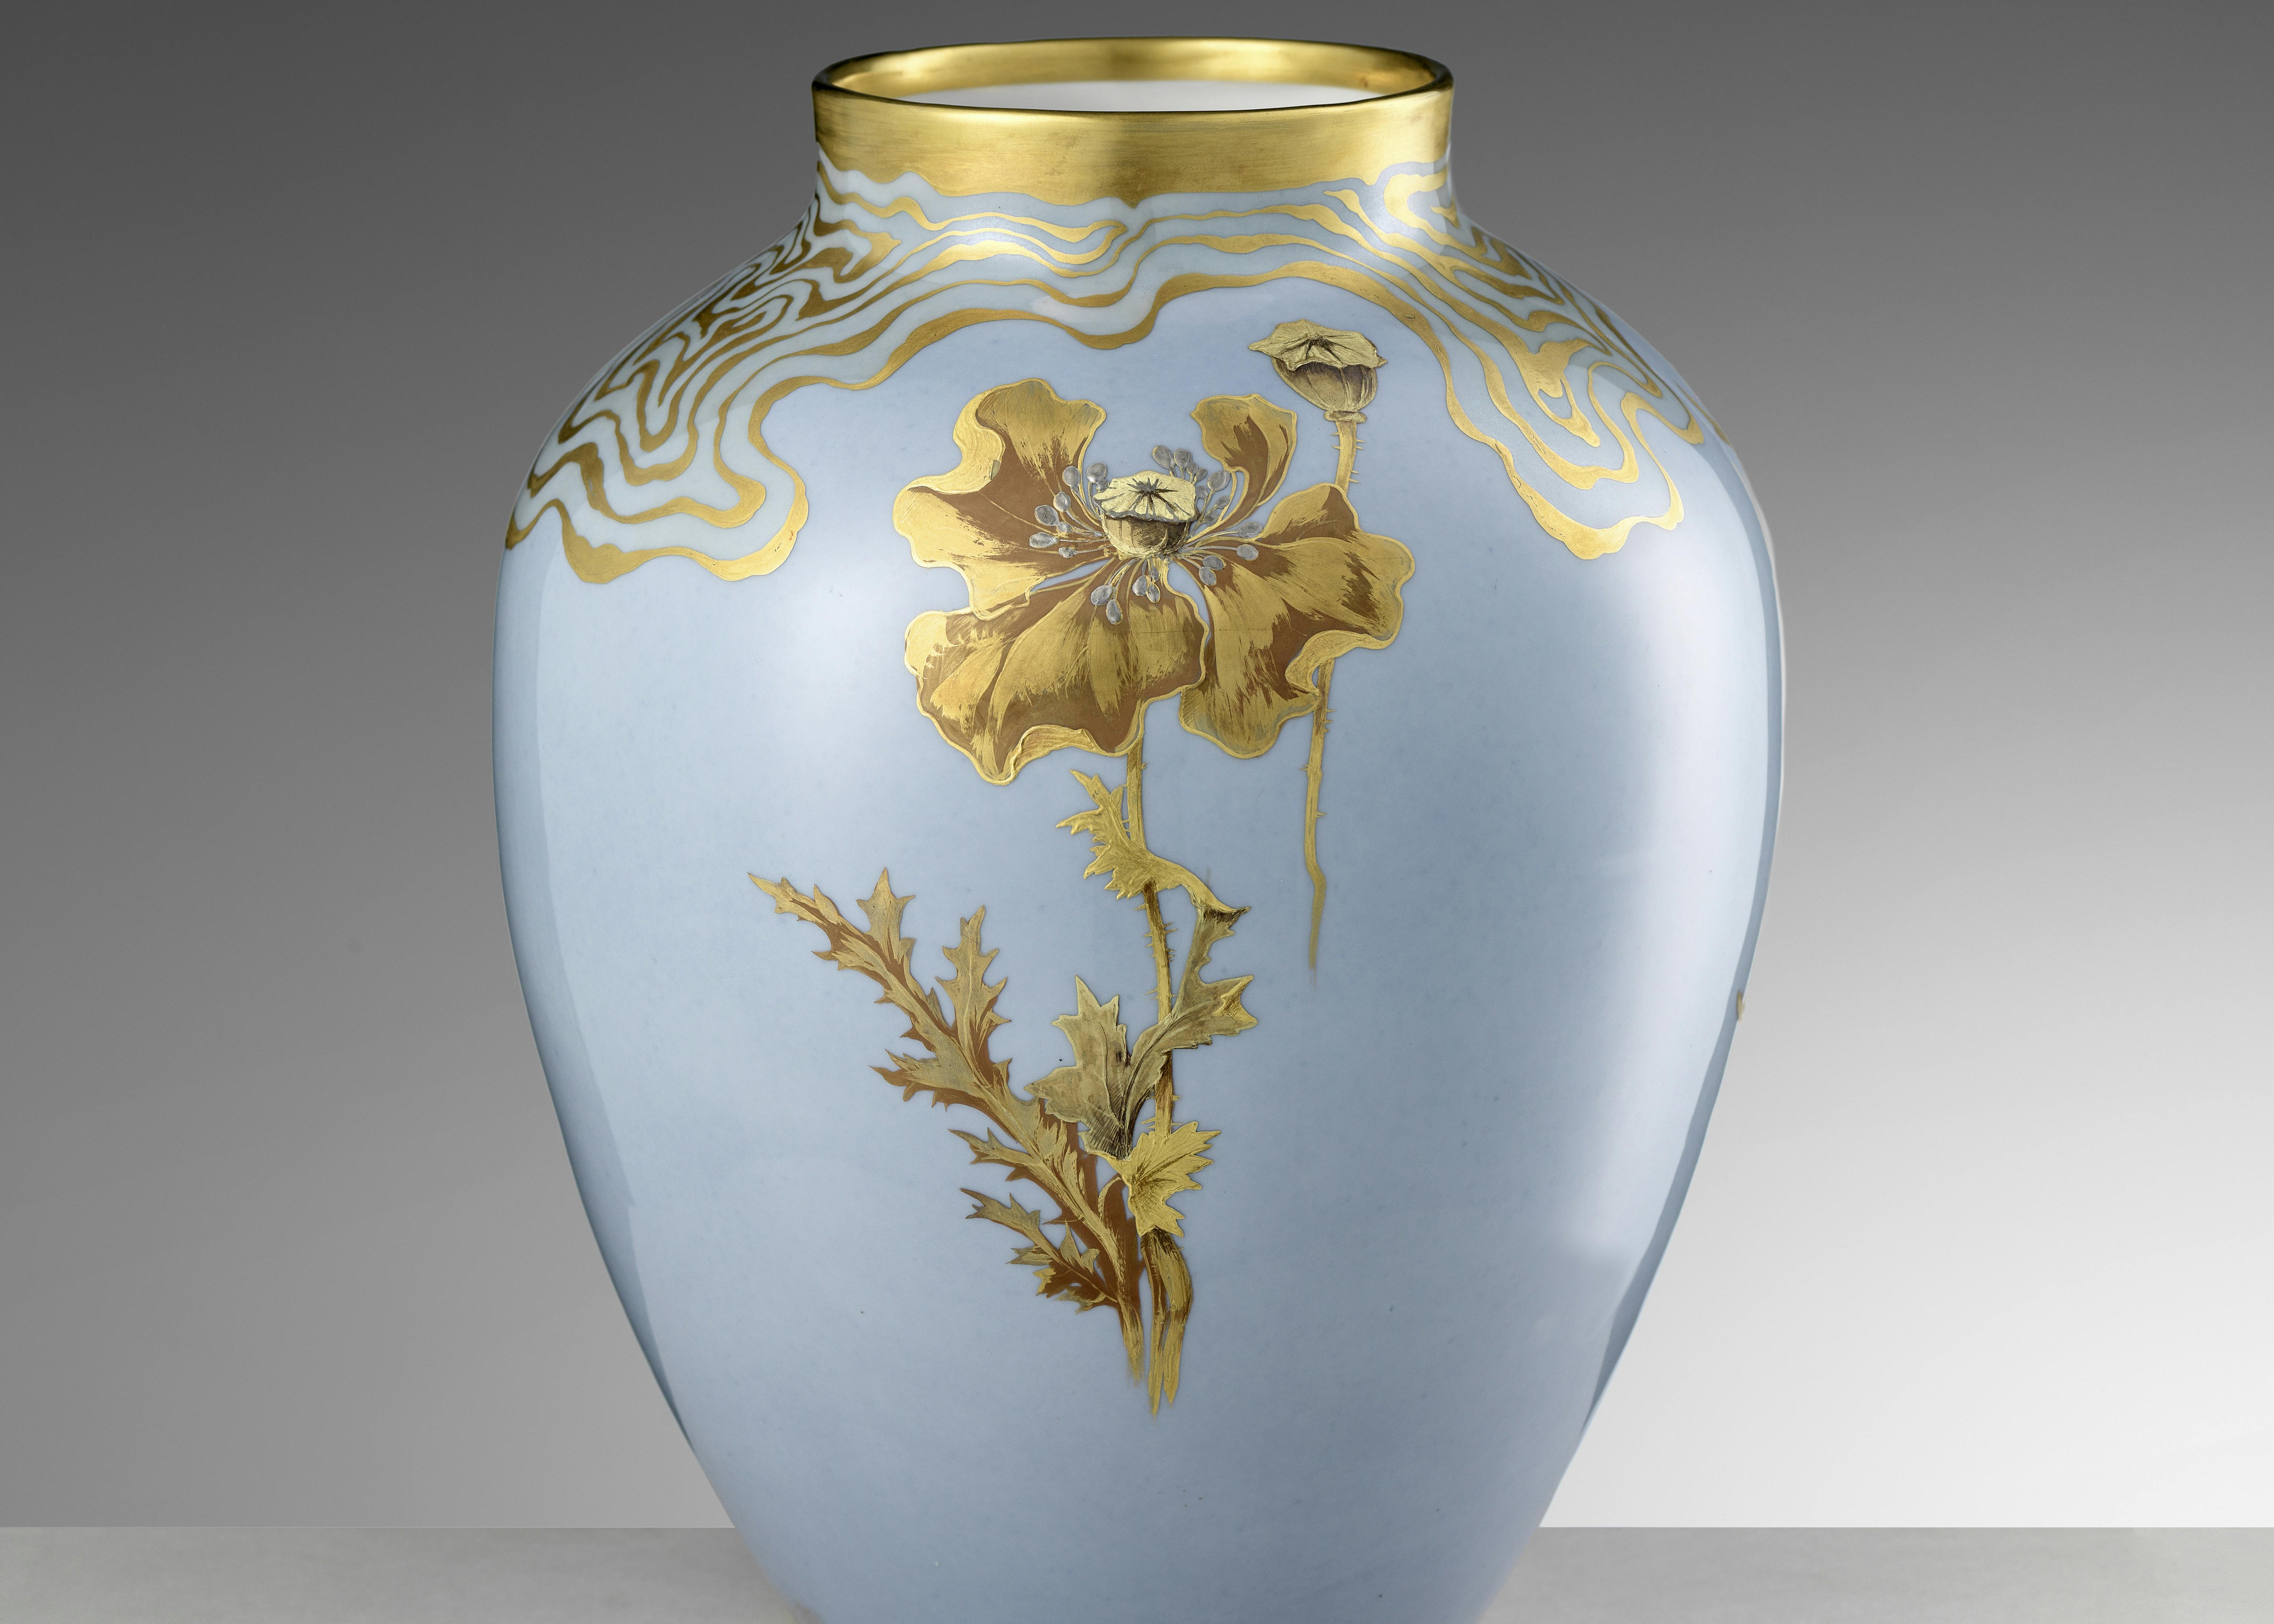 Vaso azzurro con decorazioni floreali in oro